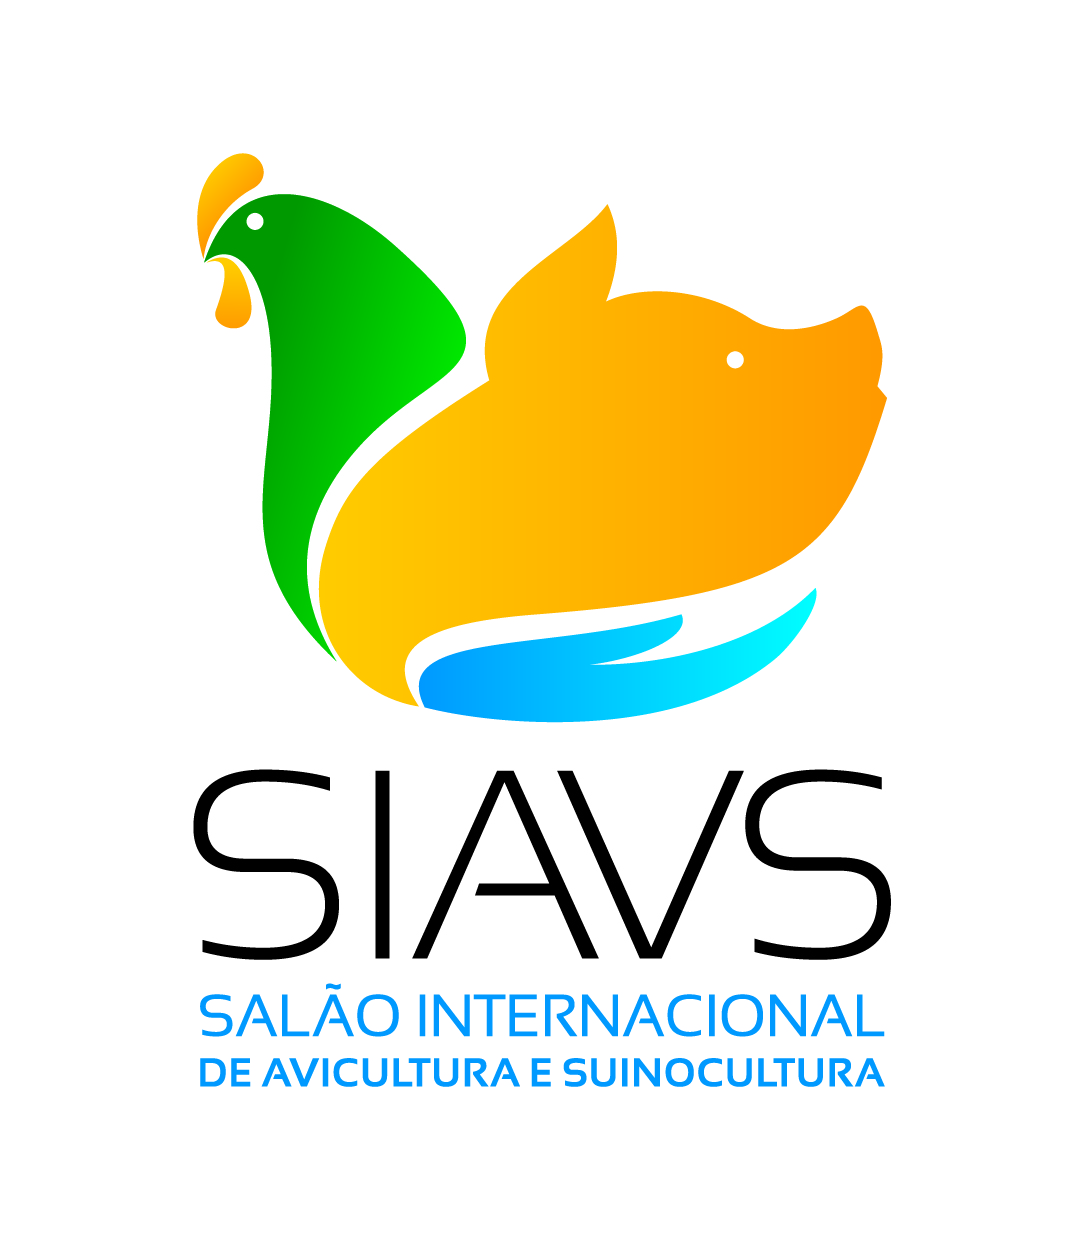 Salão Internacional de Avicultura e Suinocultura - SIAVS 2022